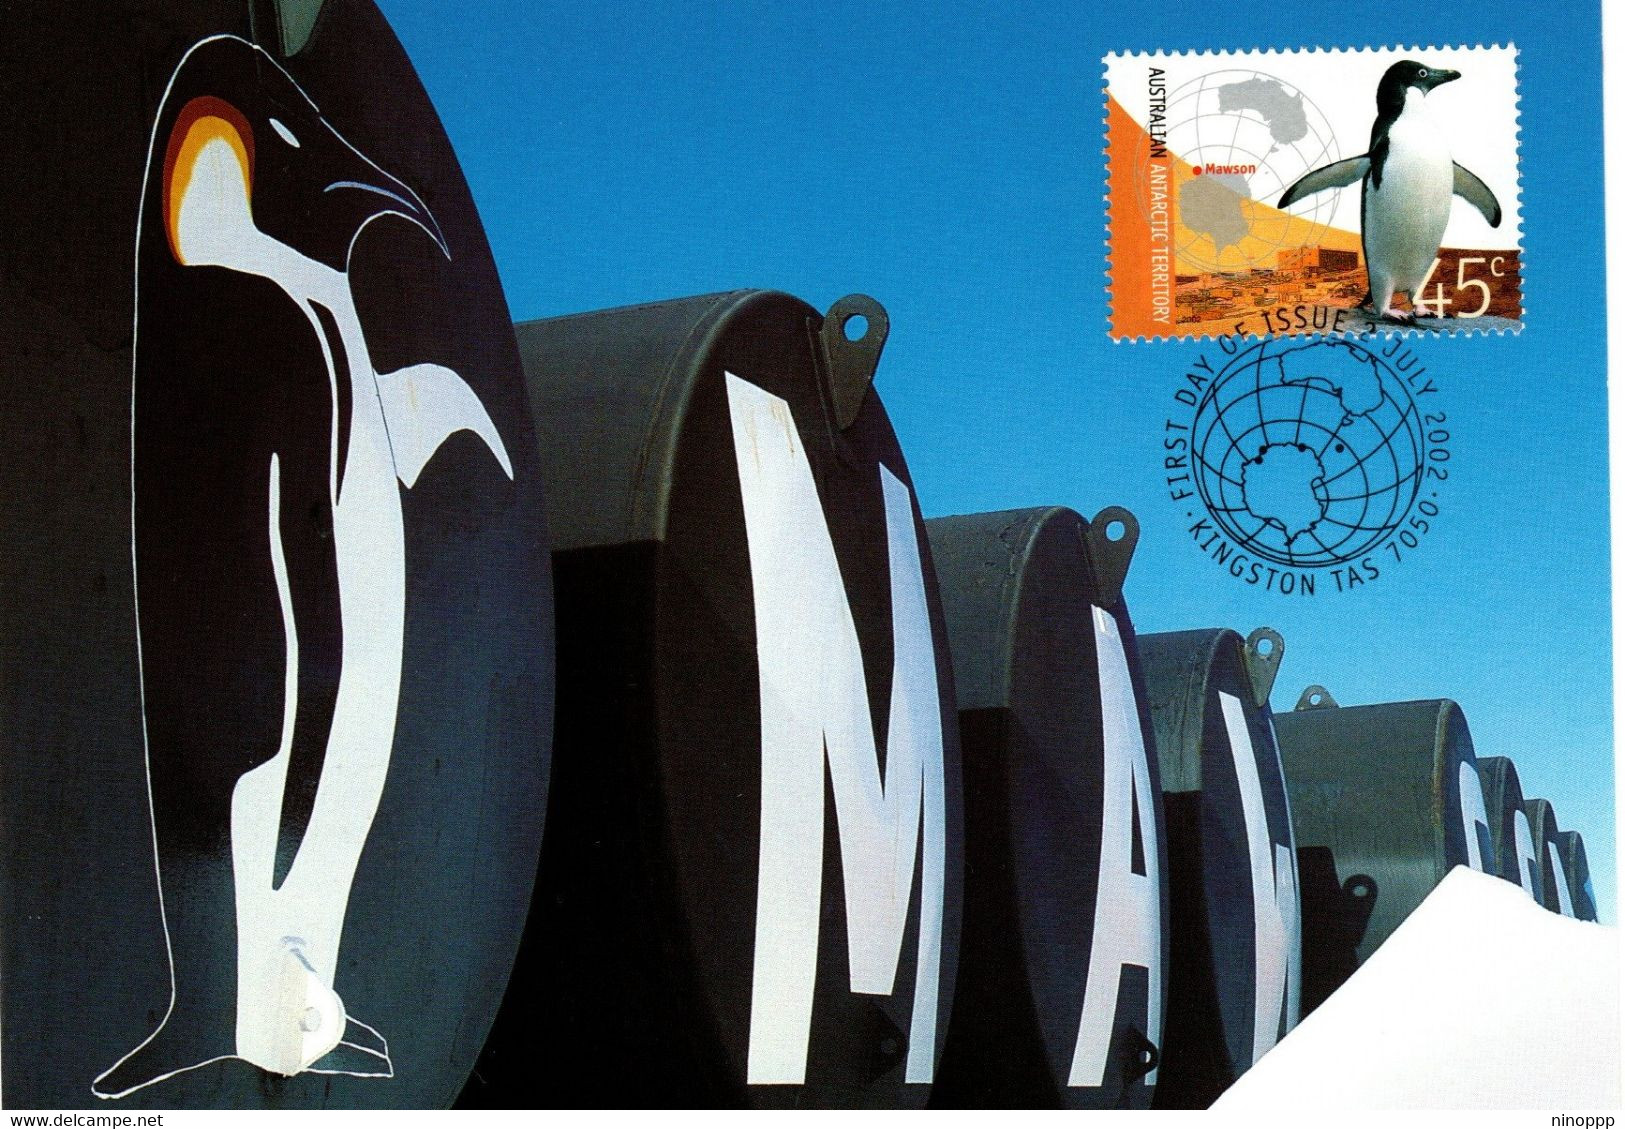 Australian Antarctic Territory 2002 Antarctic Research,Mawson Station,maximum Card - Maximumkarten